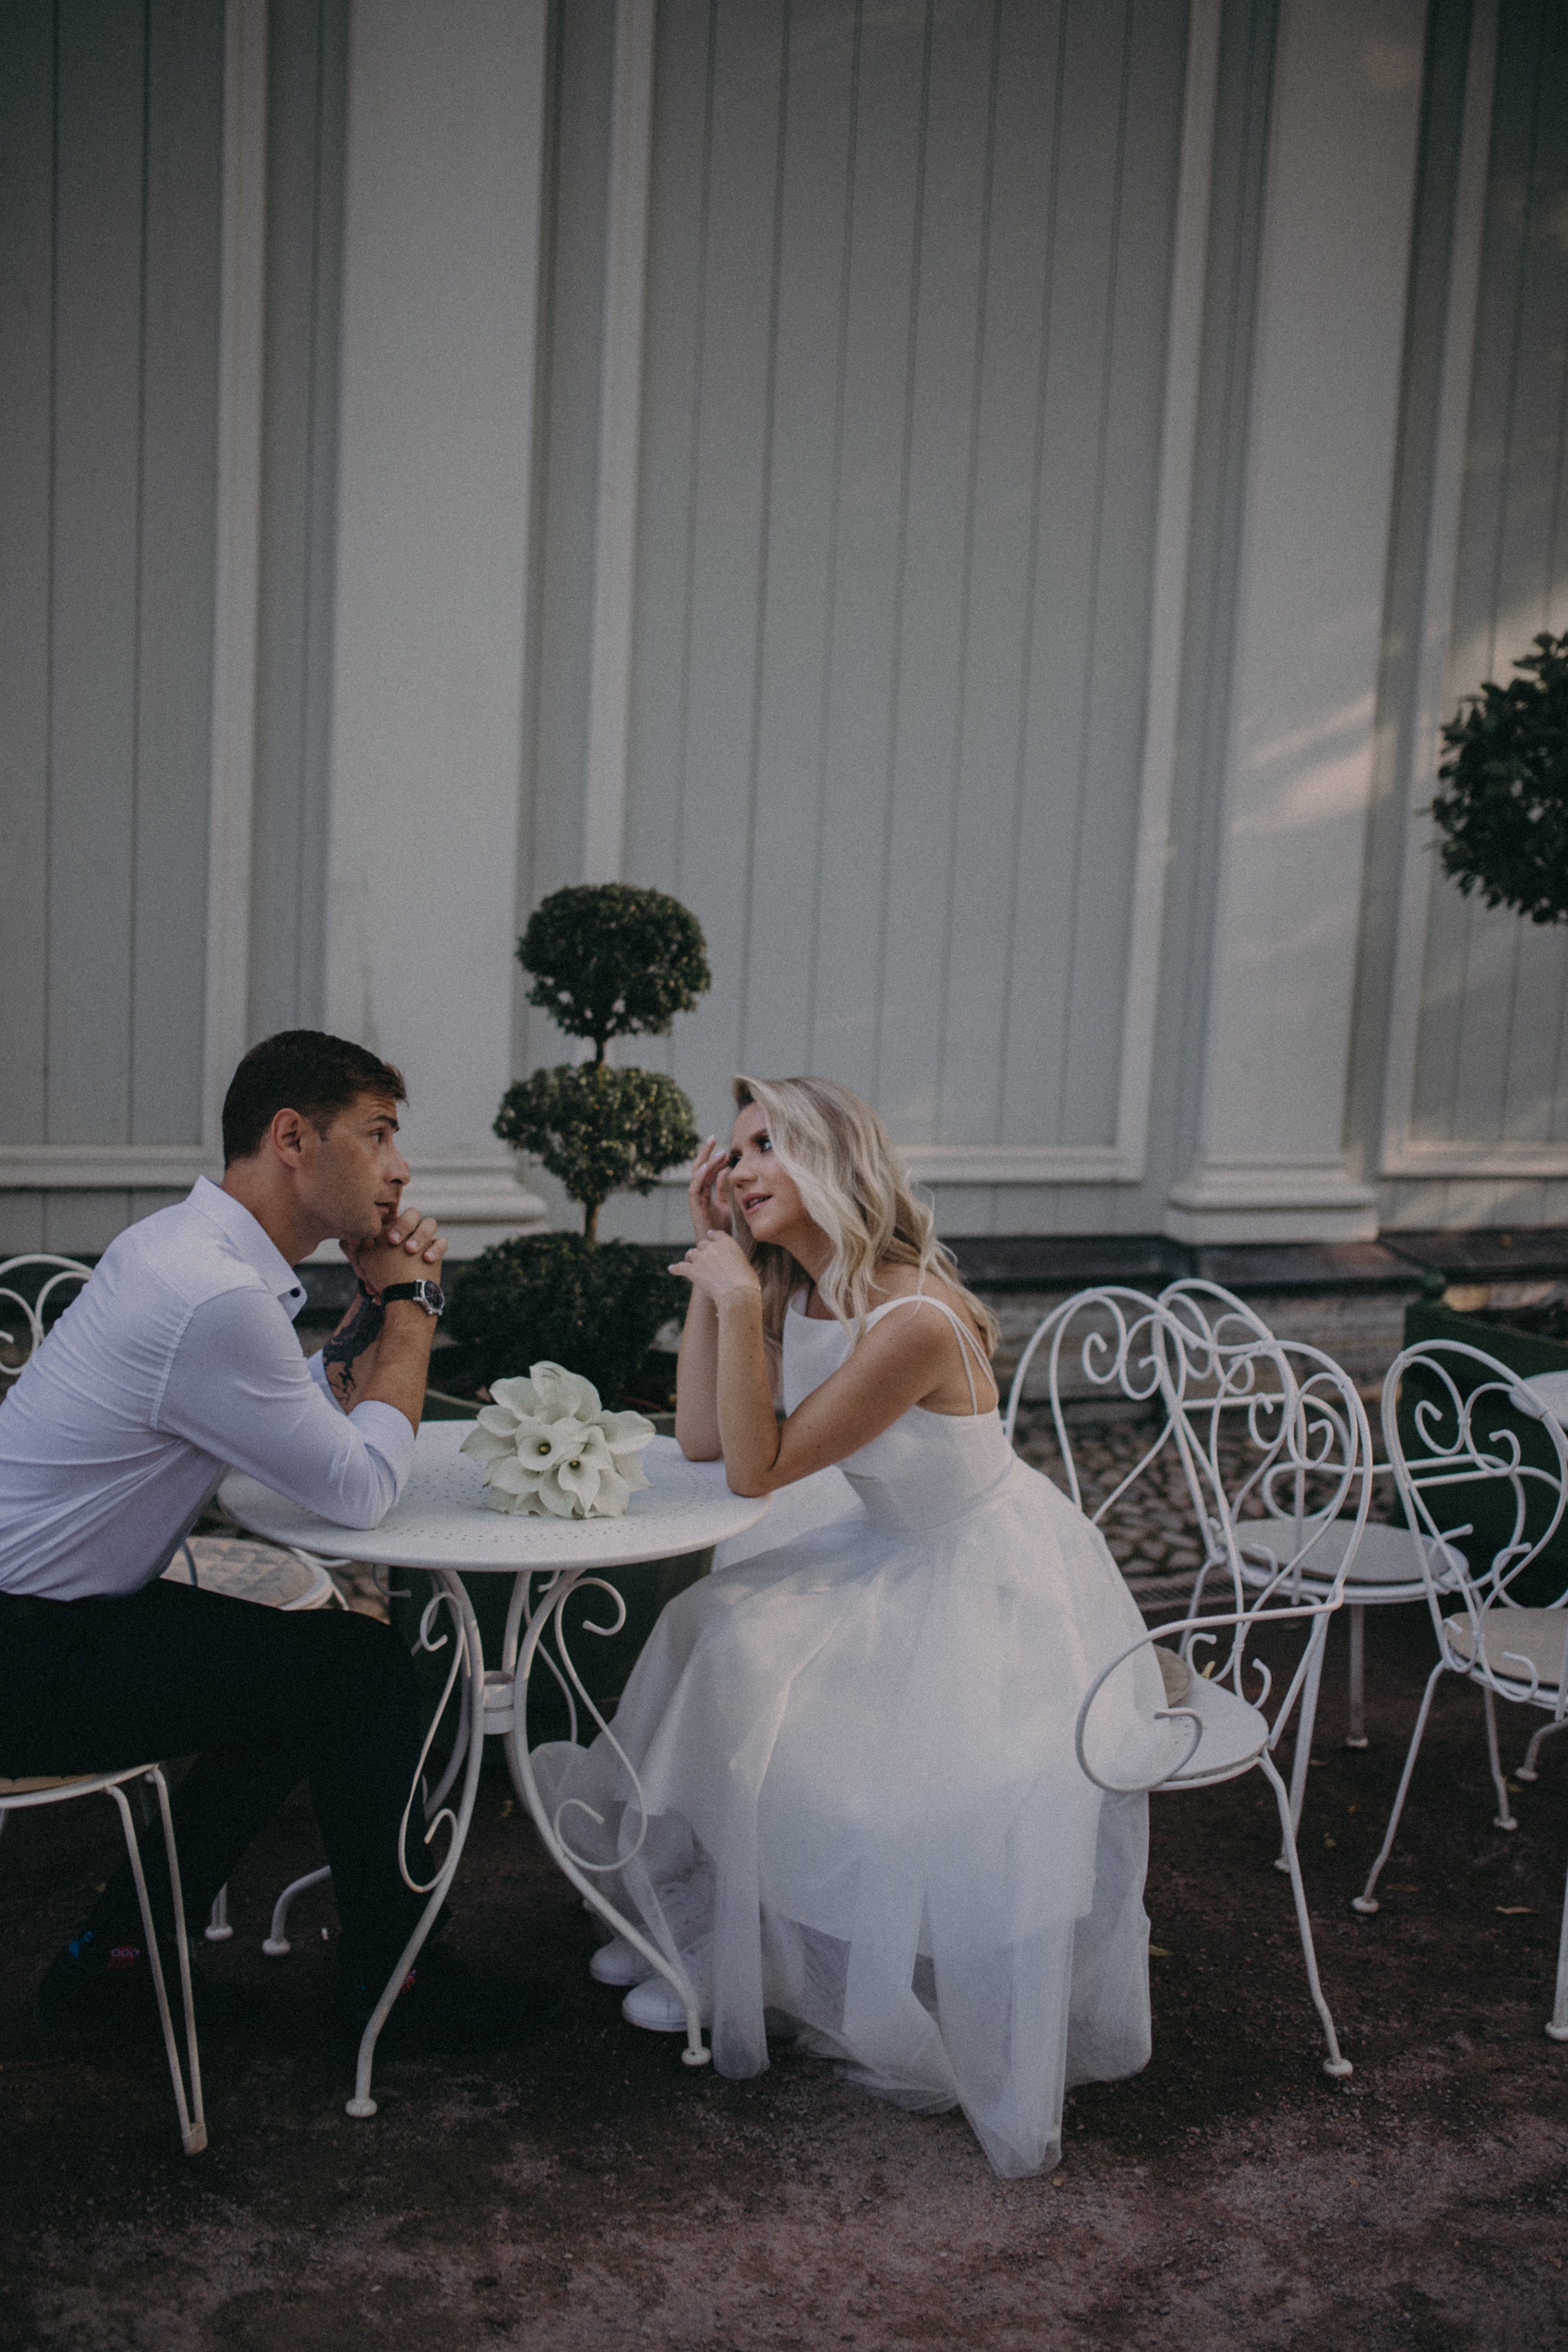 Pareja de recién casados conversando sentados | Foto: Pexels